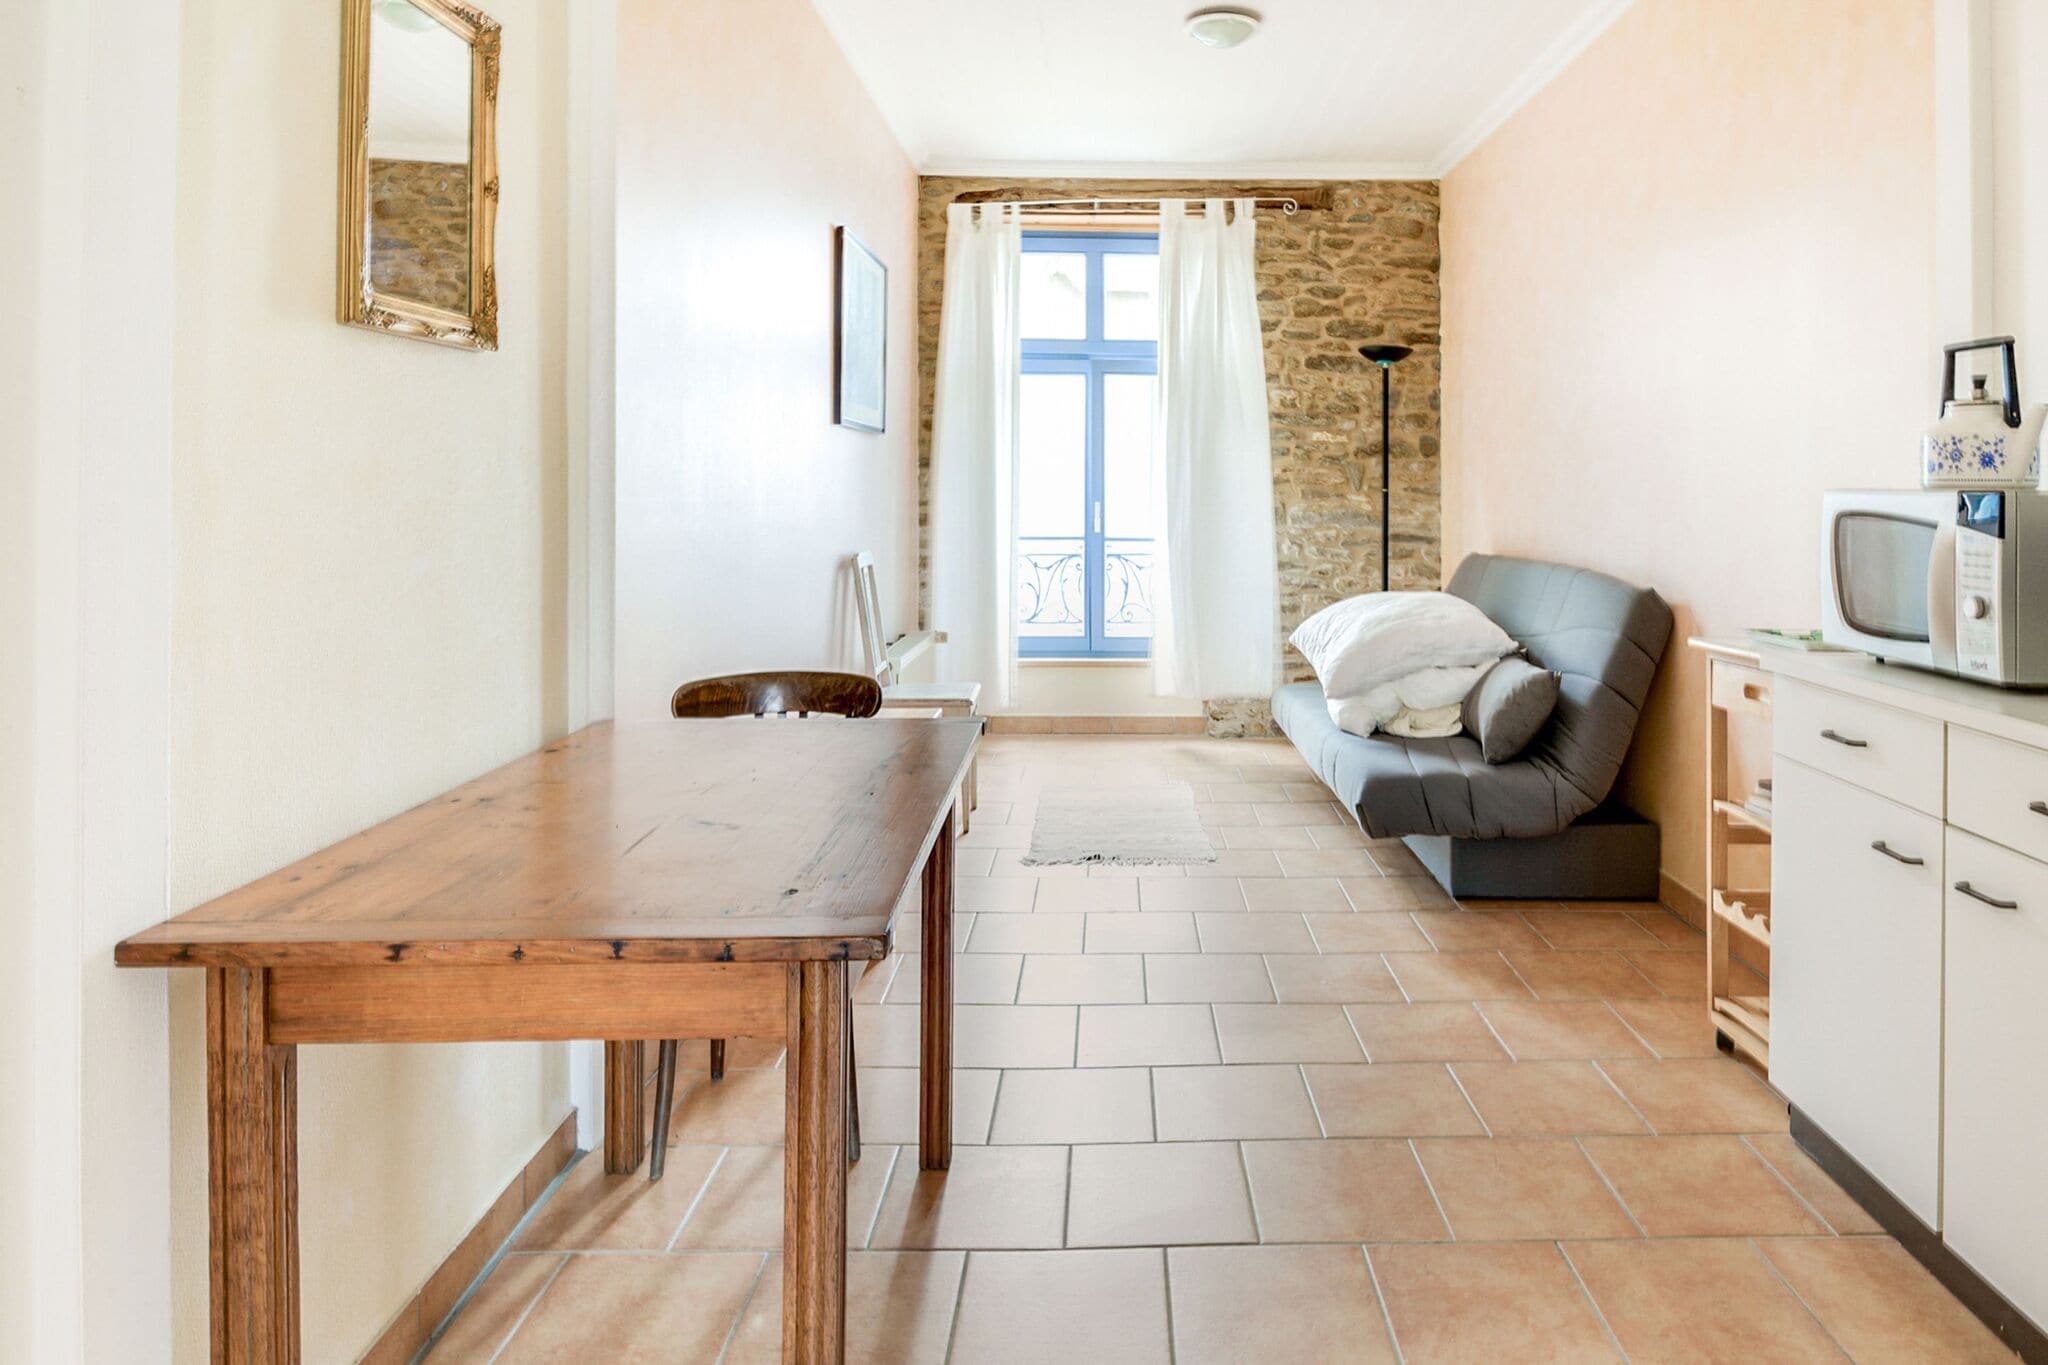 Appartement op ongeveer 100 meter van de oceaan in het zuiden van Bretagne.